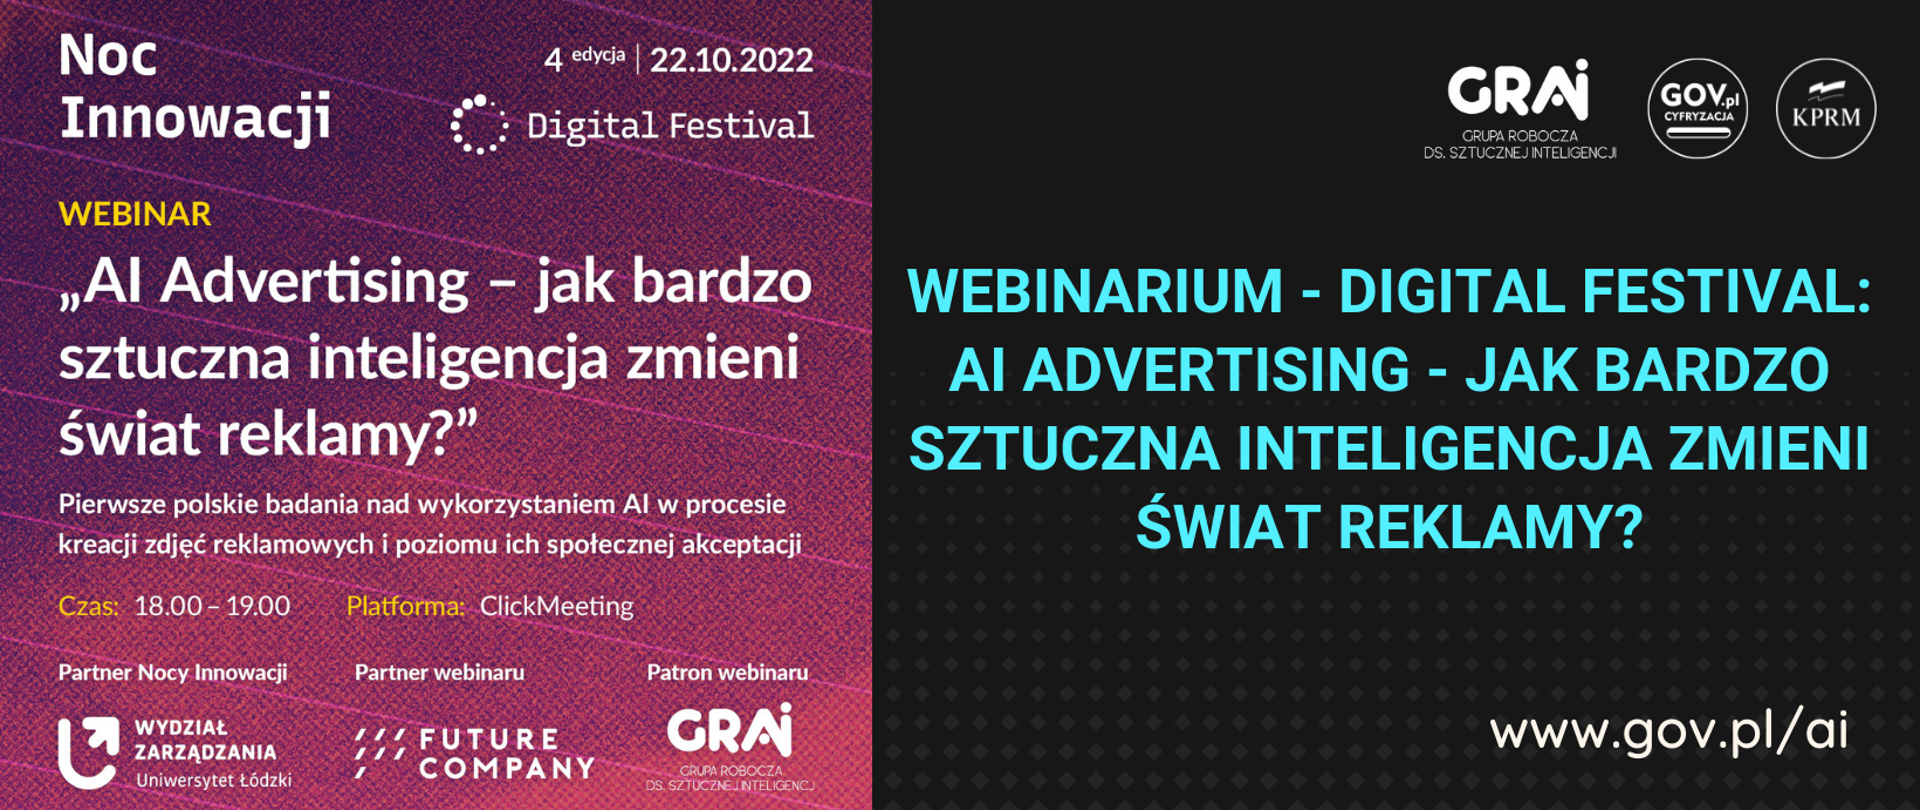 Webinarium - Digital Festival: AI Advertising - jak bardzo sztuczna inteligencja zmieni świat reklamy?